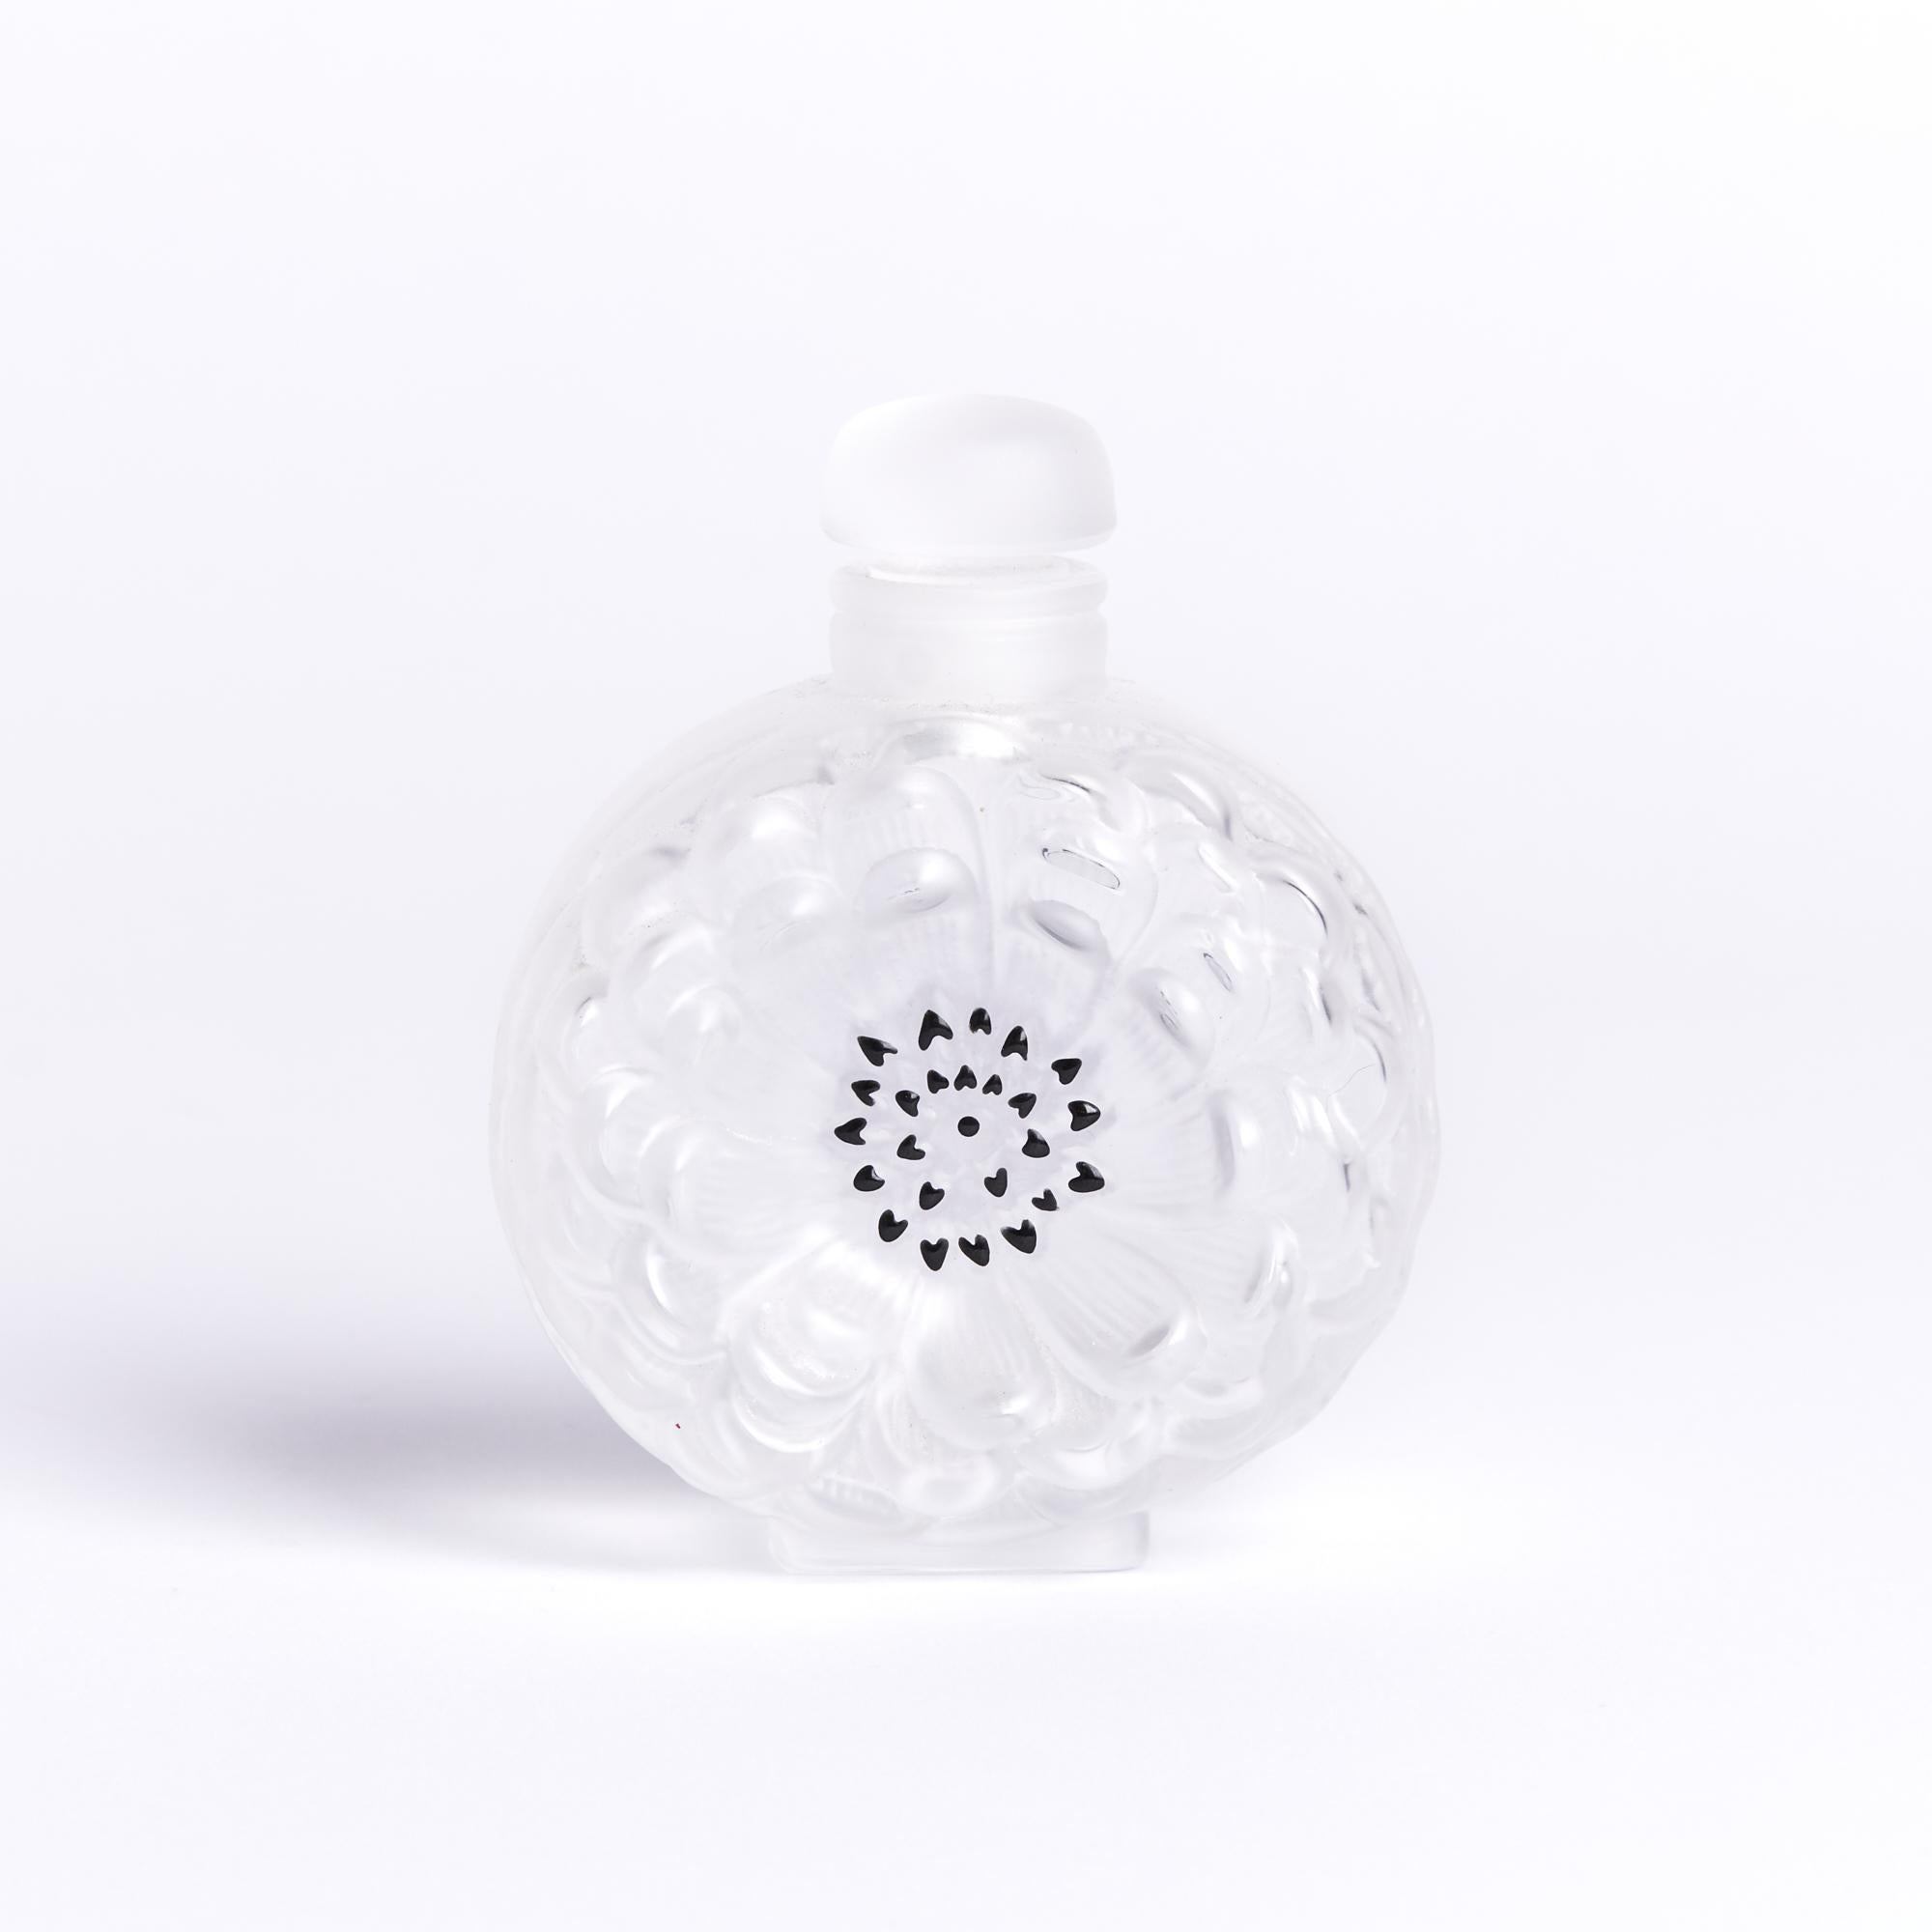 Parfümflasche Dahlia von Lalique

Diese Parfümflasche misst: 3 breit x 1,5 tief x 3,5 Zoll hoch

Toller Vintage By Zustand

Wir machen unsere Fotos in einem Studio mit kontrollierter Beleuchtung, um so viele Details wie möglich zu zeigen. Wir